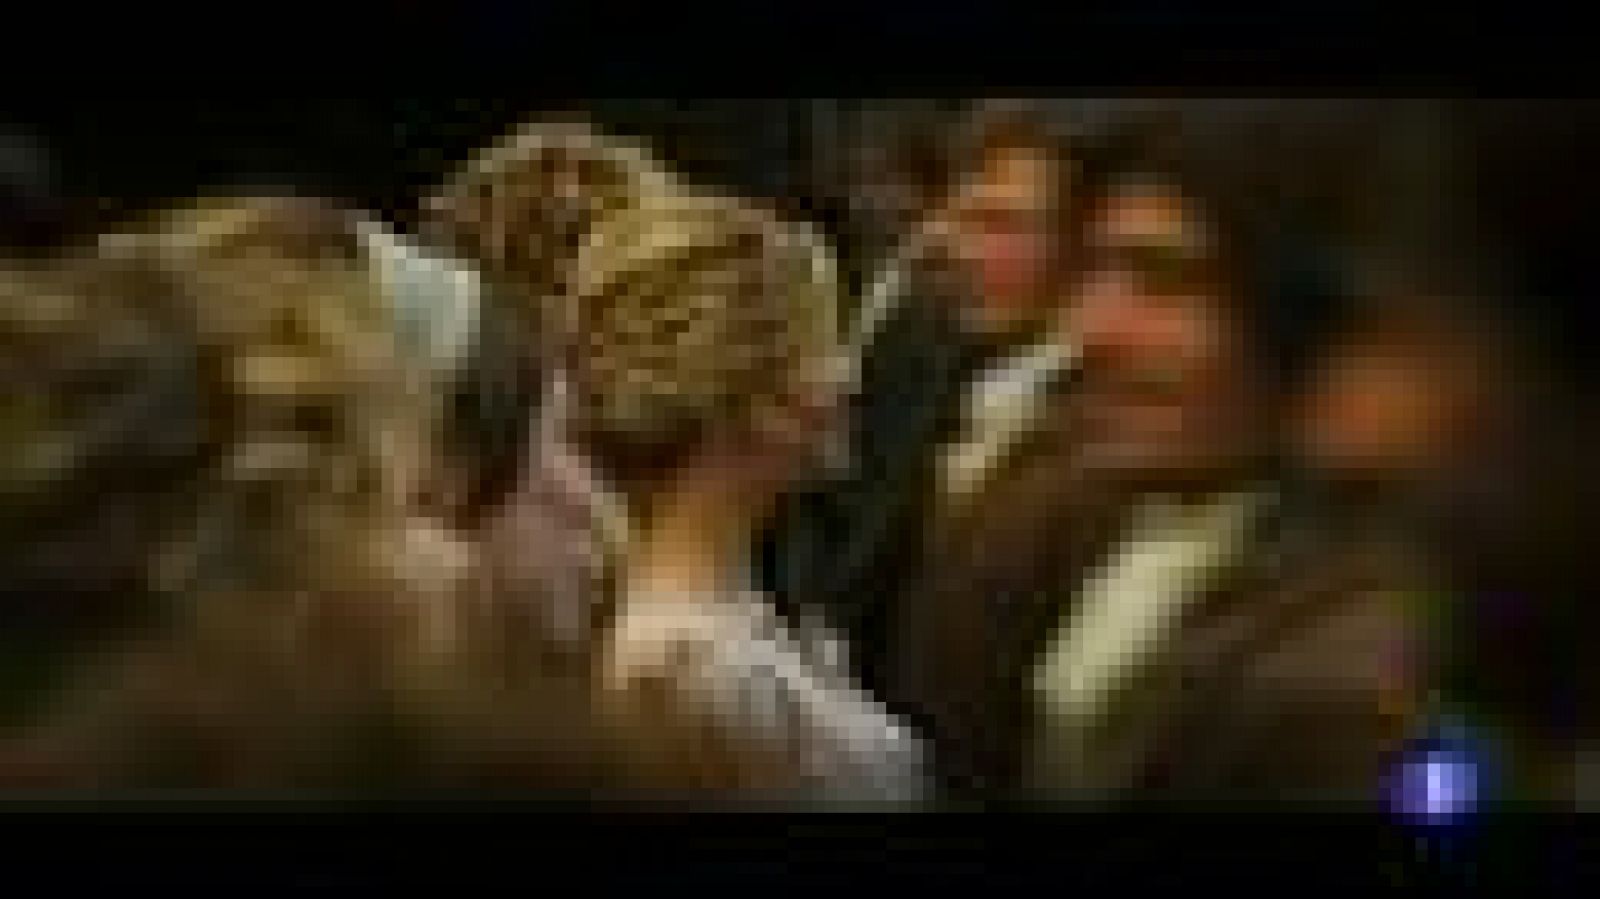 La novela "Orgullo y prejuicio" de Jane Austen cumple 200 años